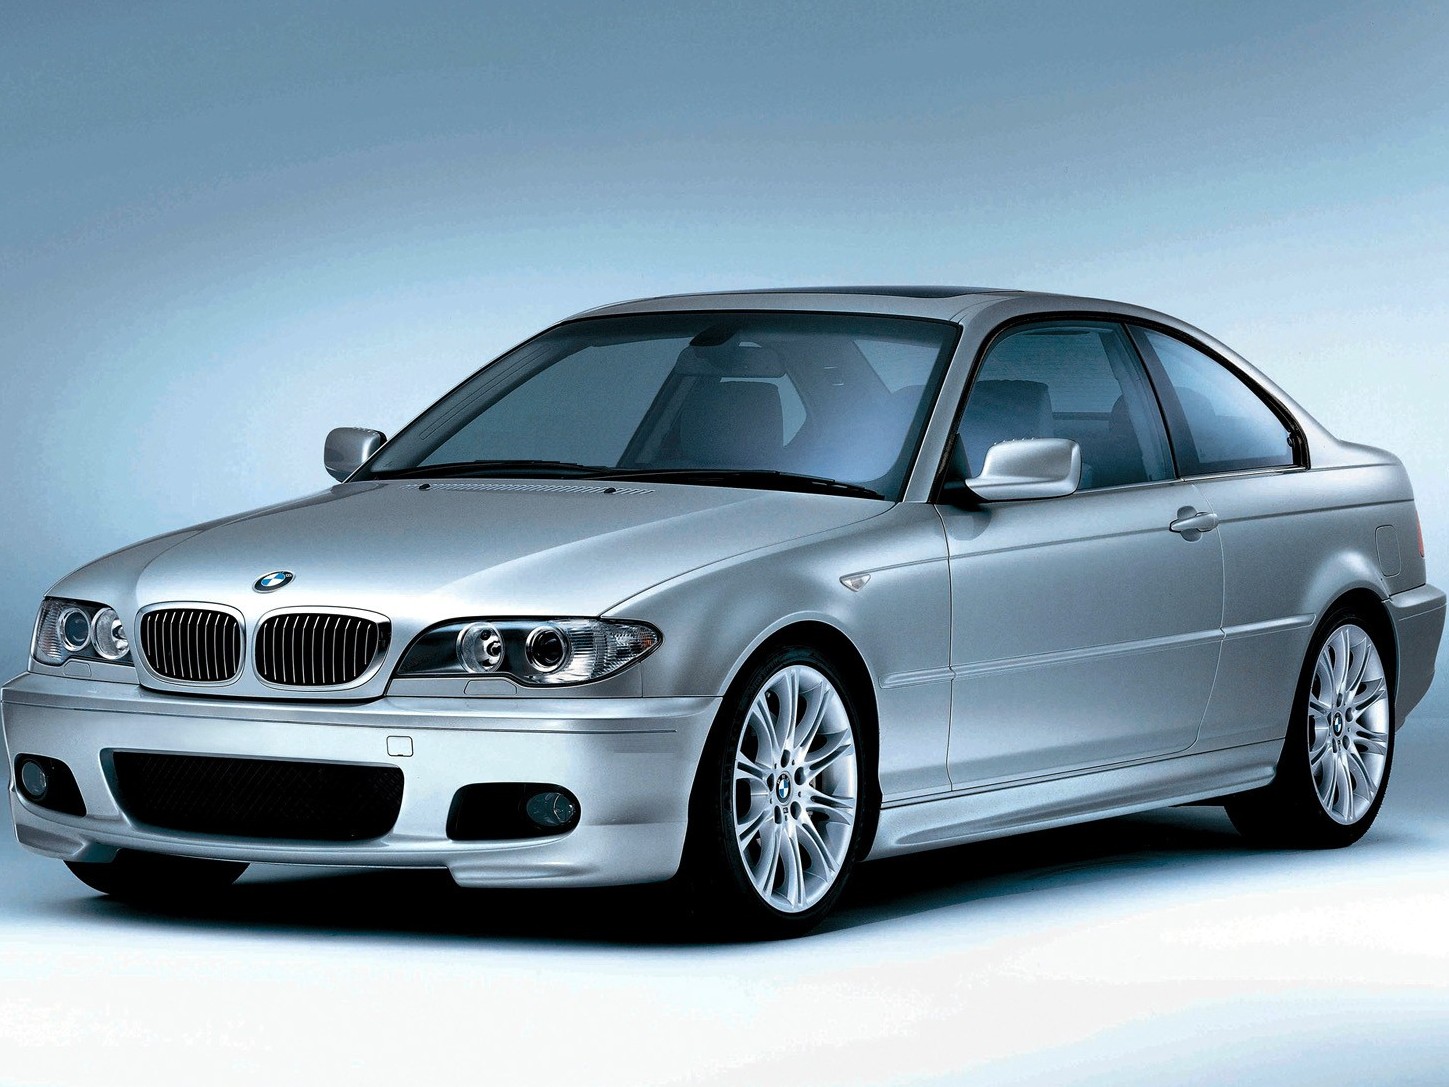 БМВ 3 серия - цена, комплектации, обзор BMW 3 серия, стоимость модификаций  автомобиля БМВ 3 серия. - Quto.ru